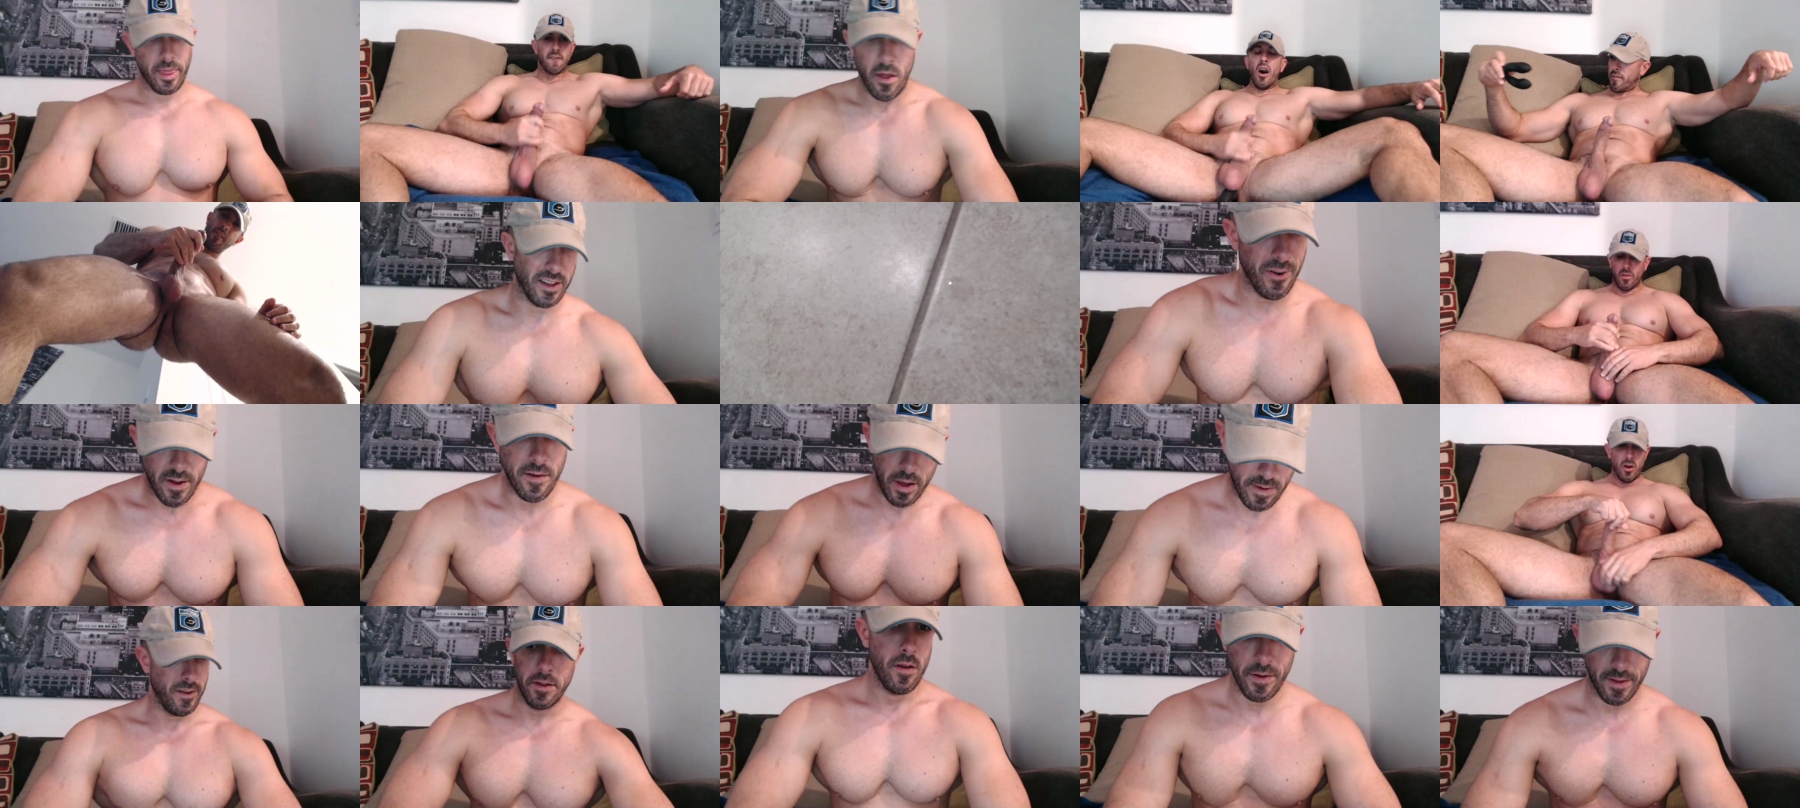 Nerdmuscles2x  26-09-2021 Male Webcam